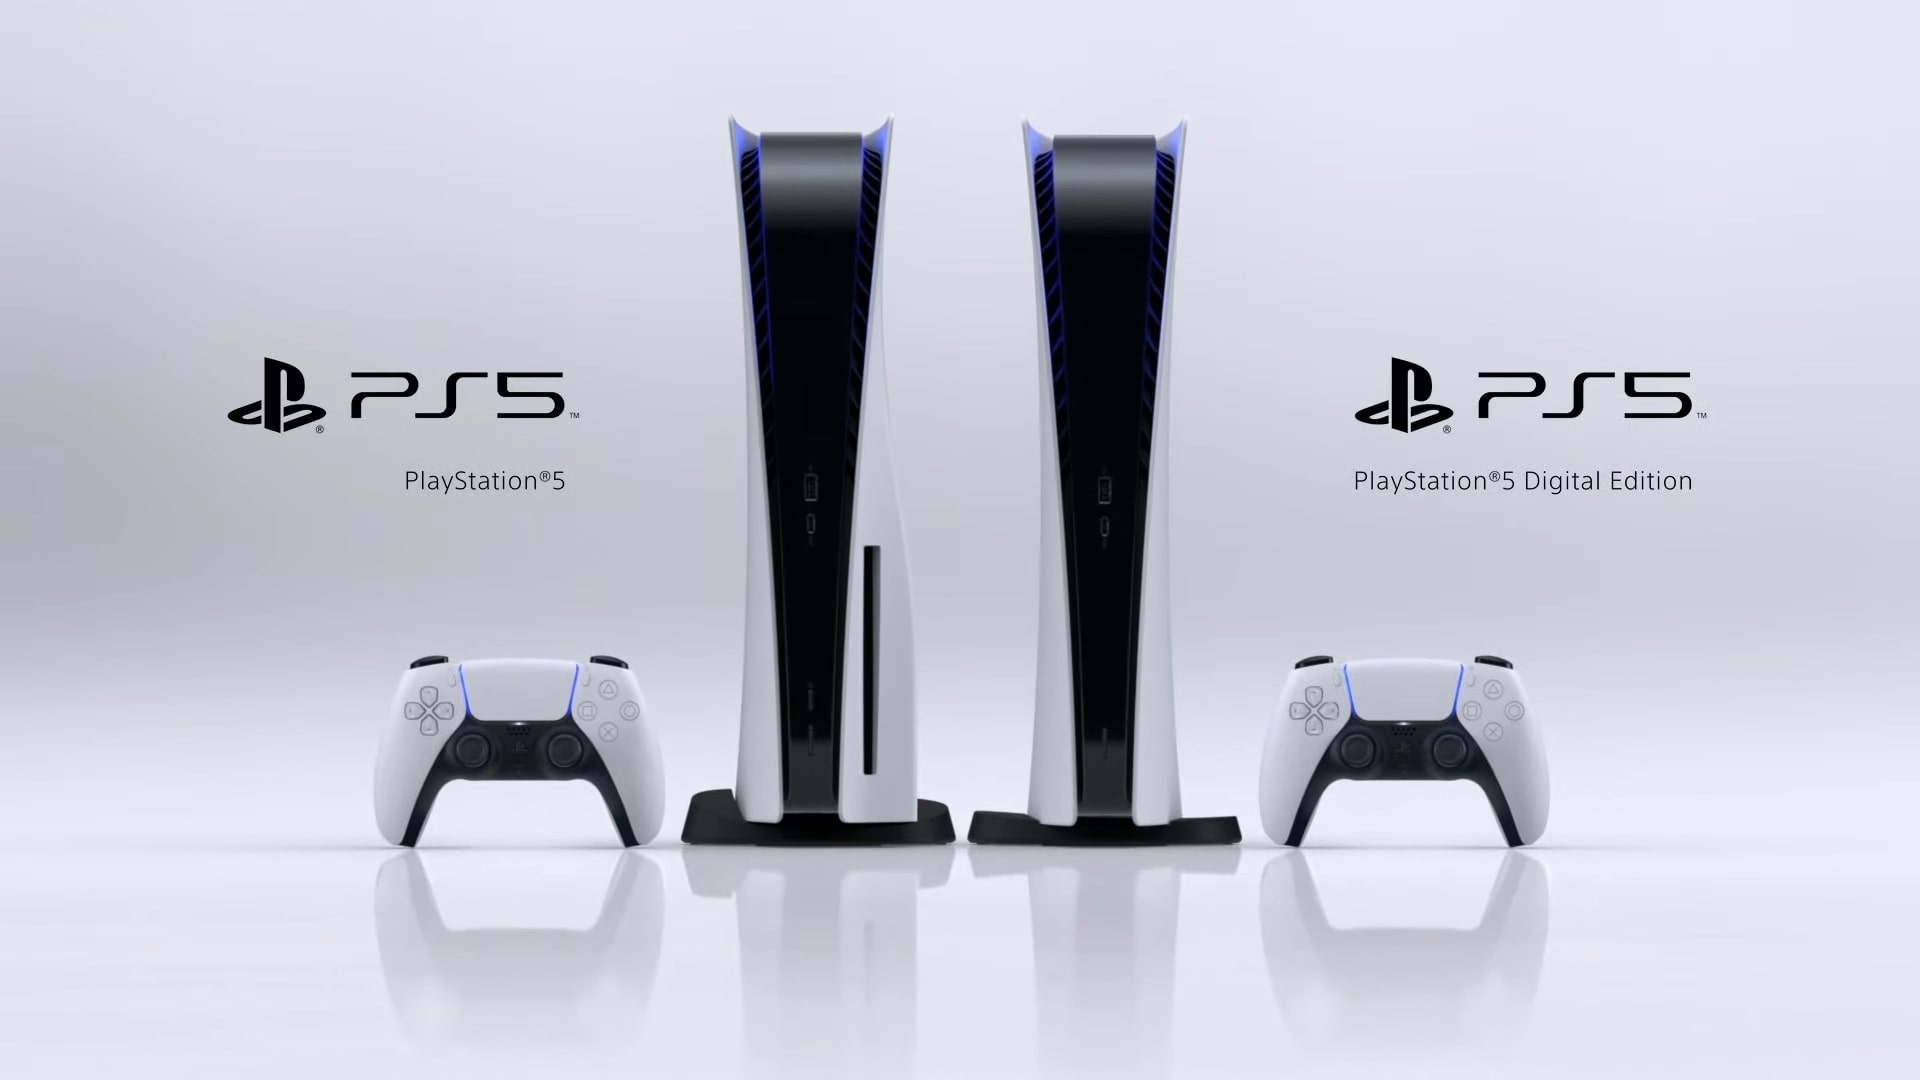 ยอดขาย PlayStation 5 ทะลุ 10 ล้านเครื่องทั่วโลก เป็นเครื่องเกมคอนโซลที่ทำยอดขายเร็วที่สุดในประวัติศาสตร์ของ Sony 